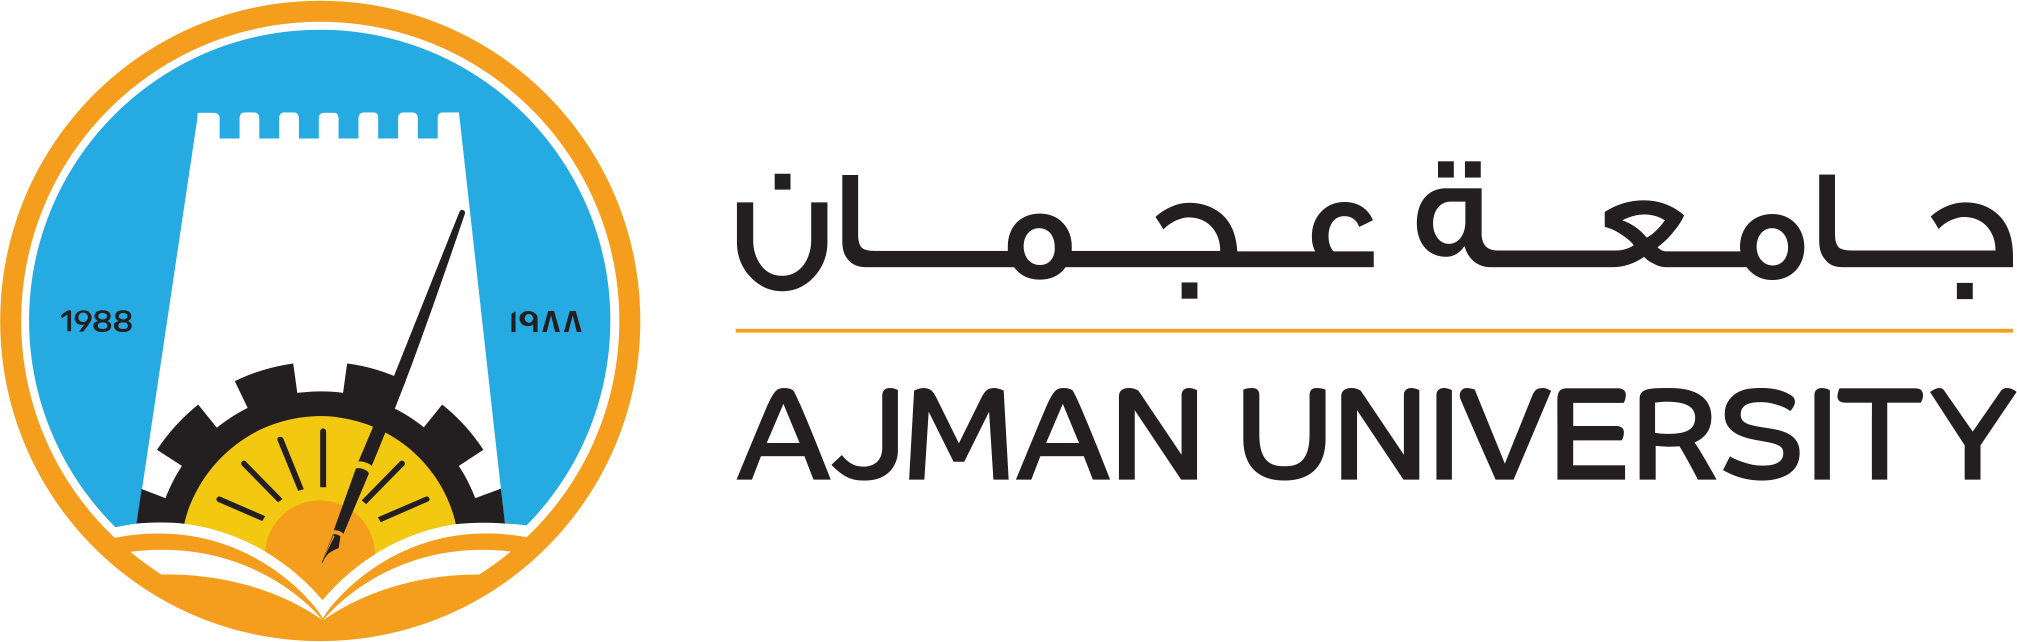 Ajman logo login.png